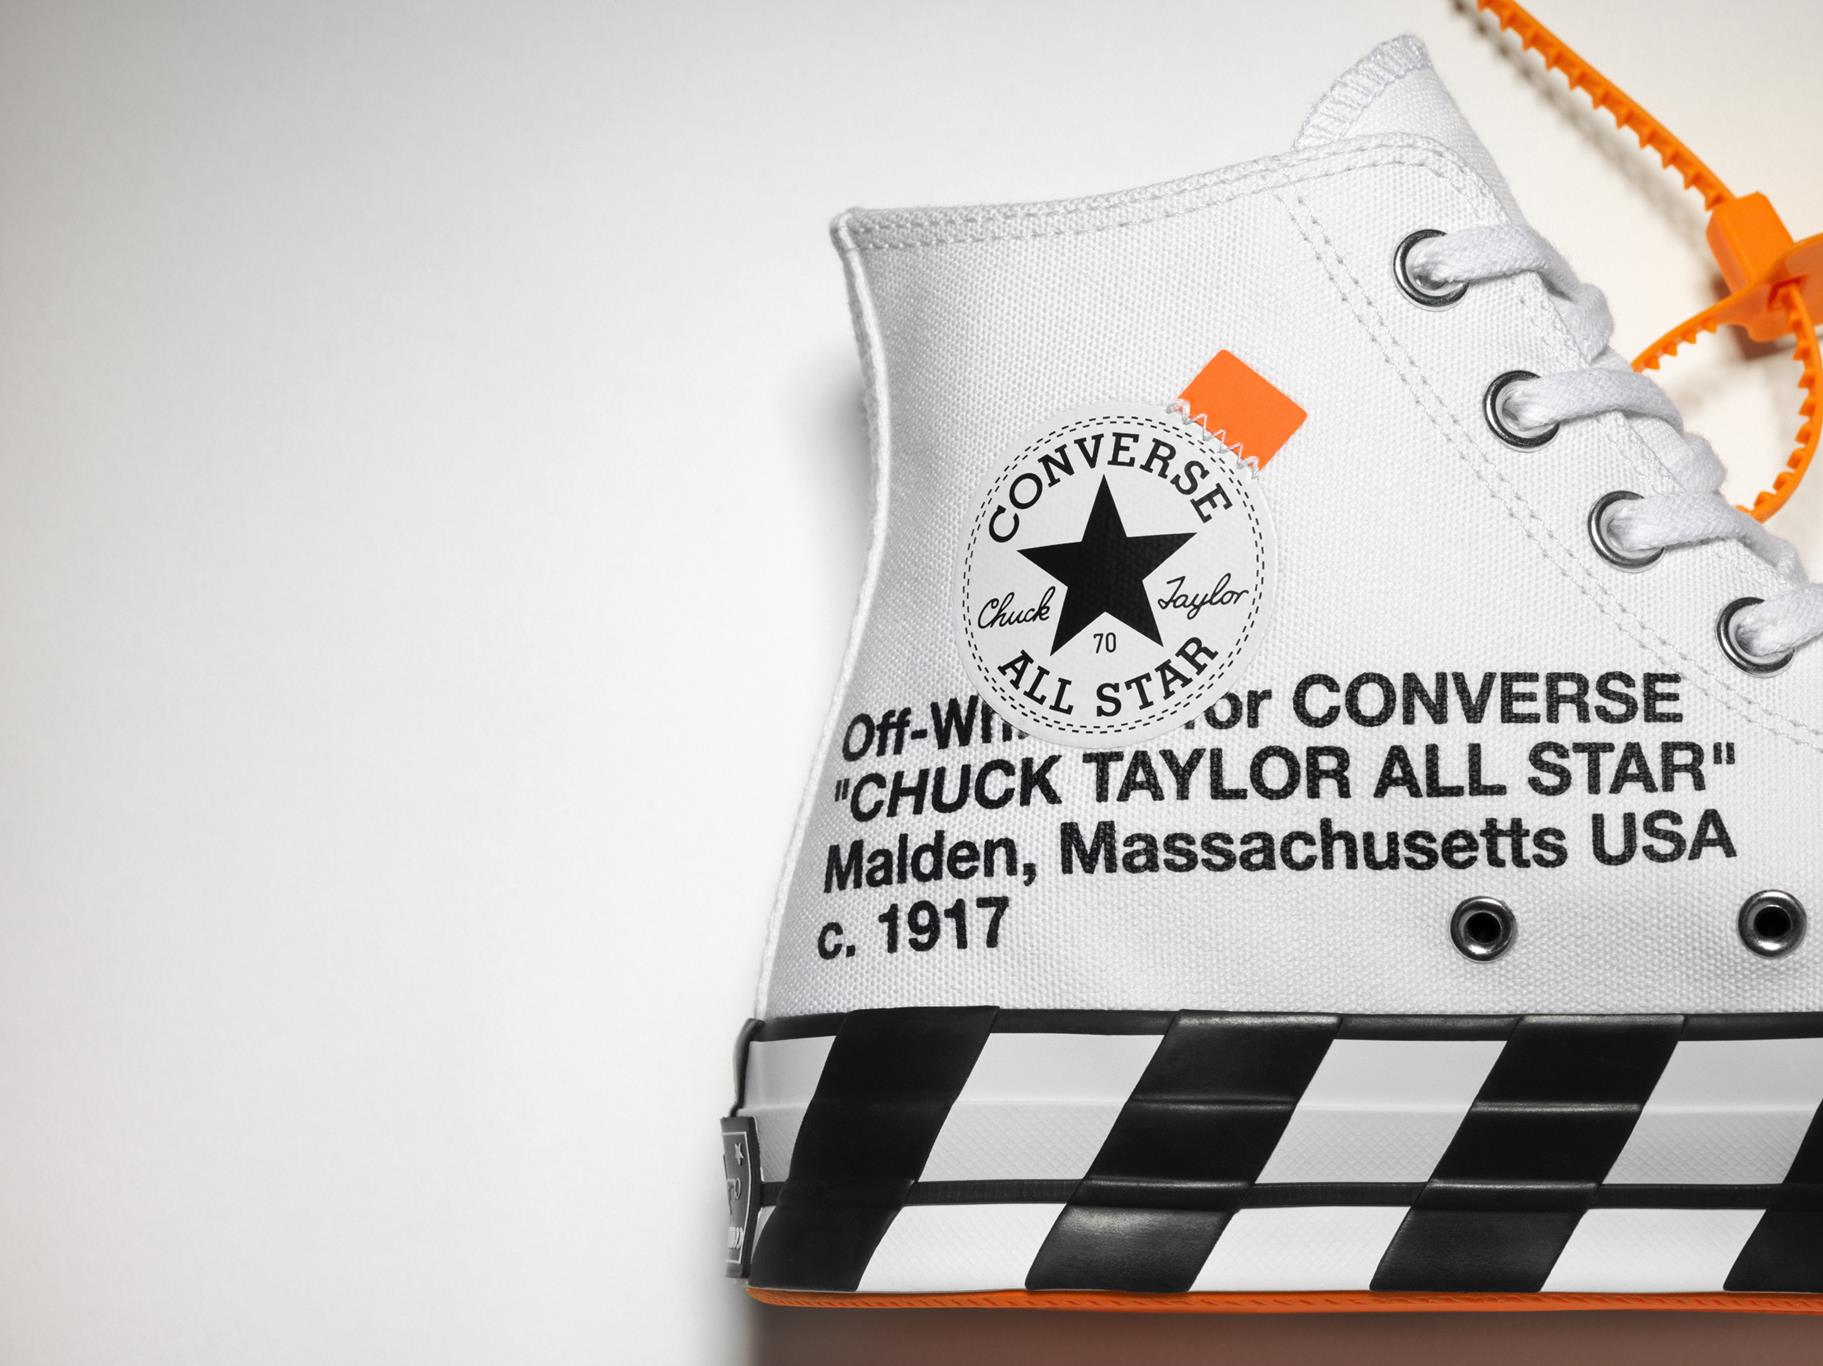 再售价依然破万！Off-White x Converse Chuck 70 据传近期即将补货，经典潮鞋又有「原价」入手机会！